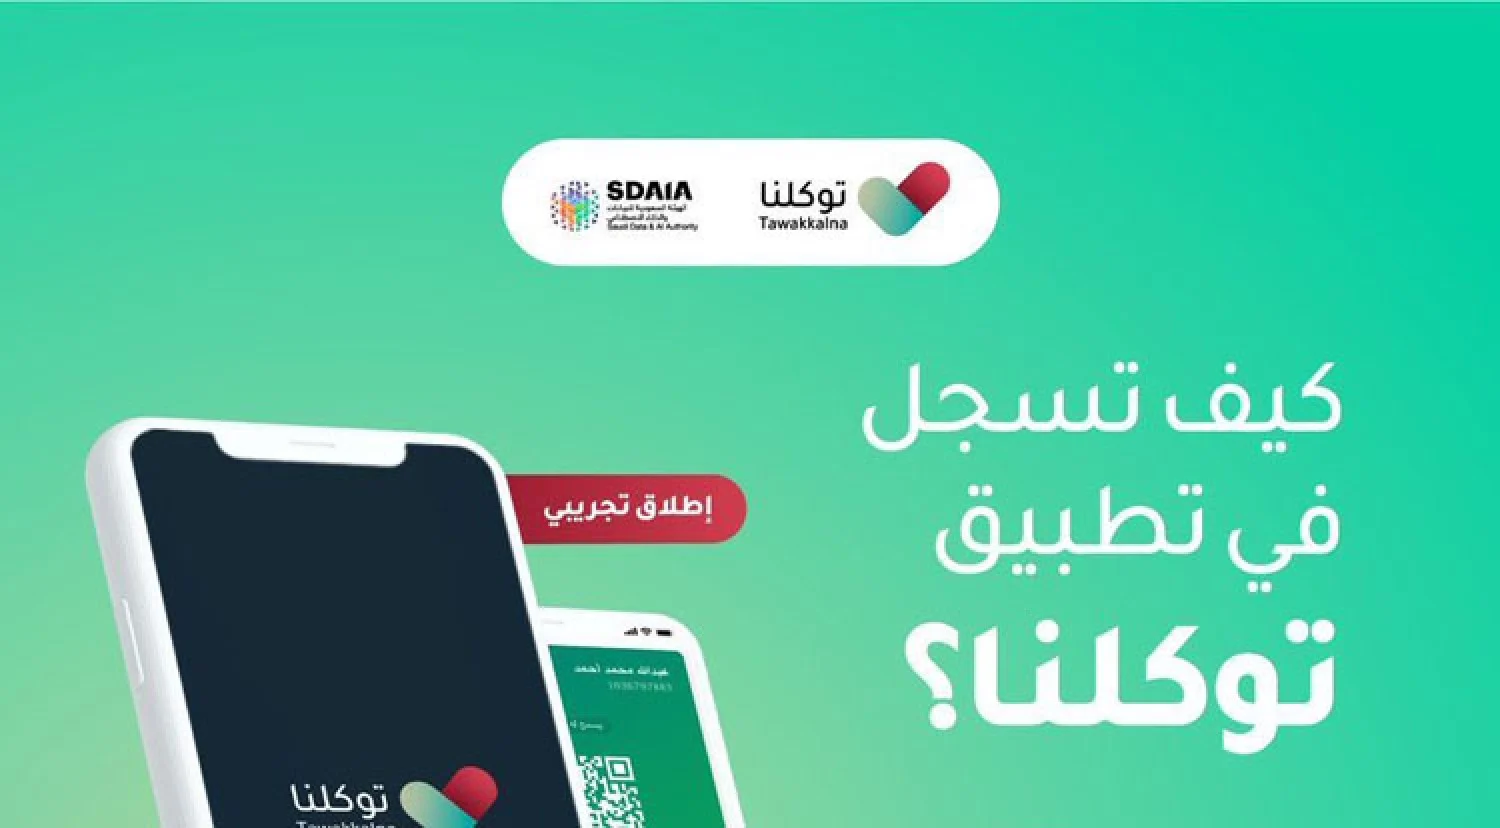 تطبيق توكلنا السعودي شرح التطبيق وكيفية تسجيل الدخول وكل ما تريد معرفته